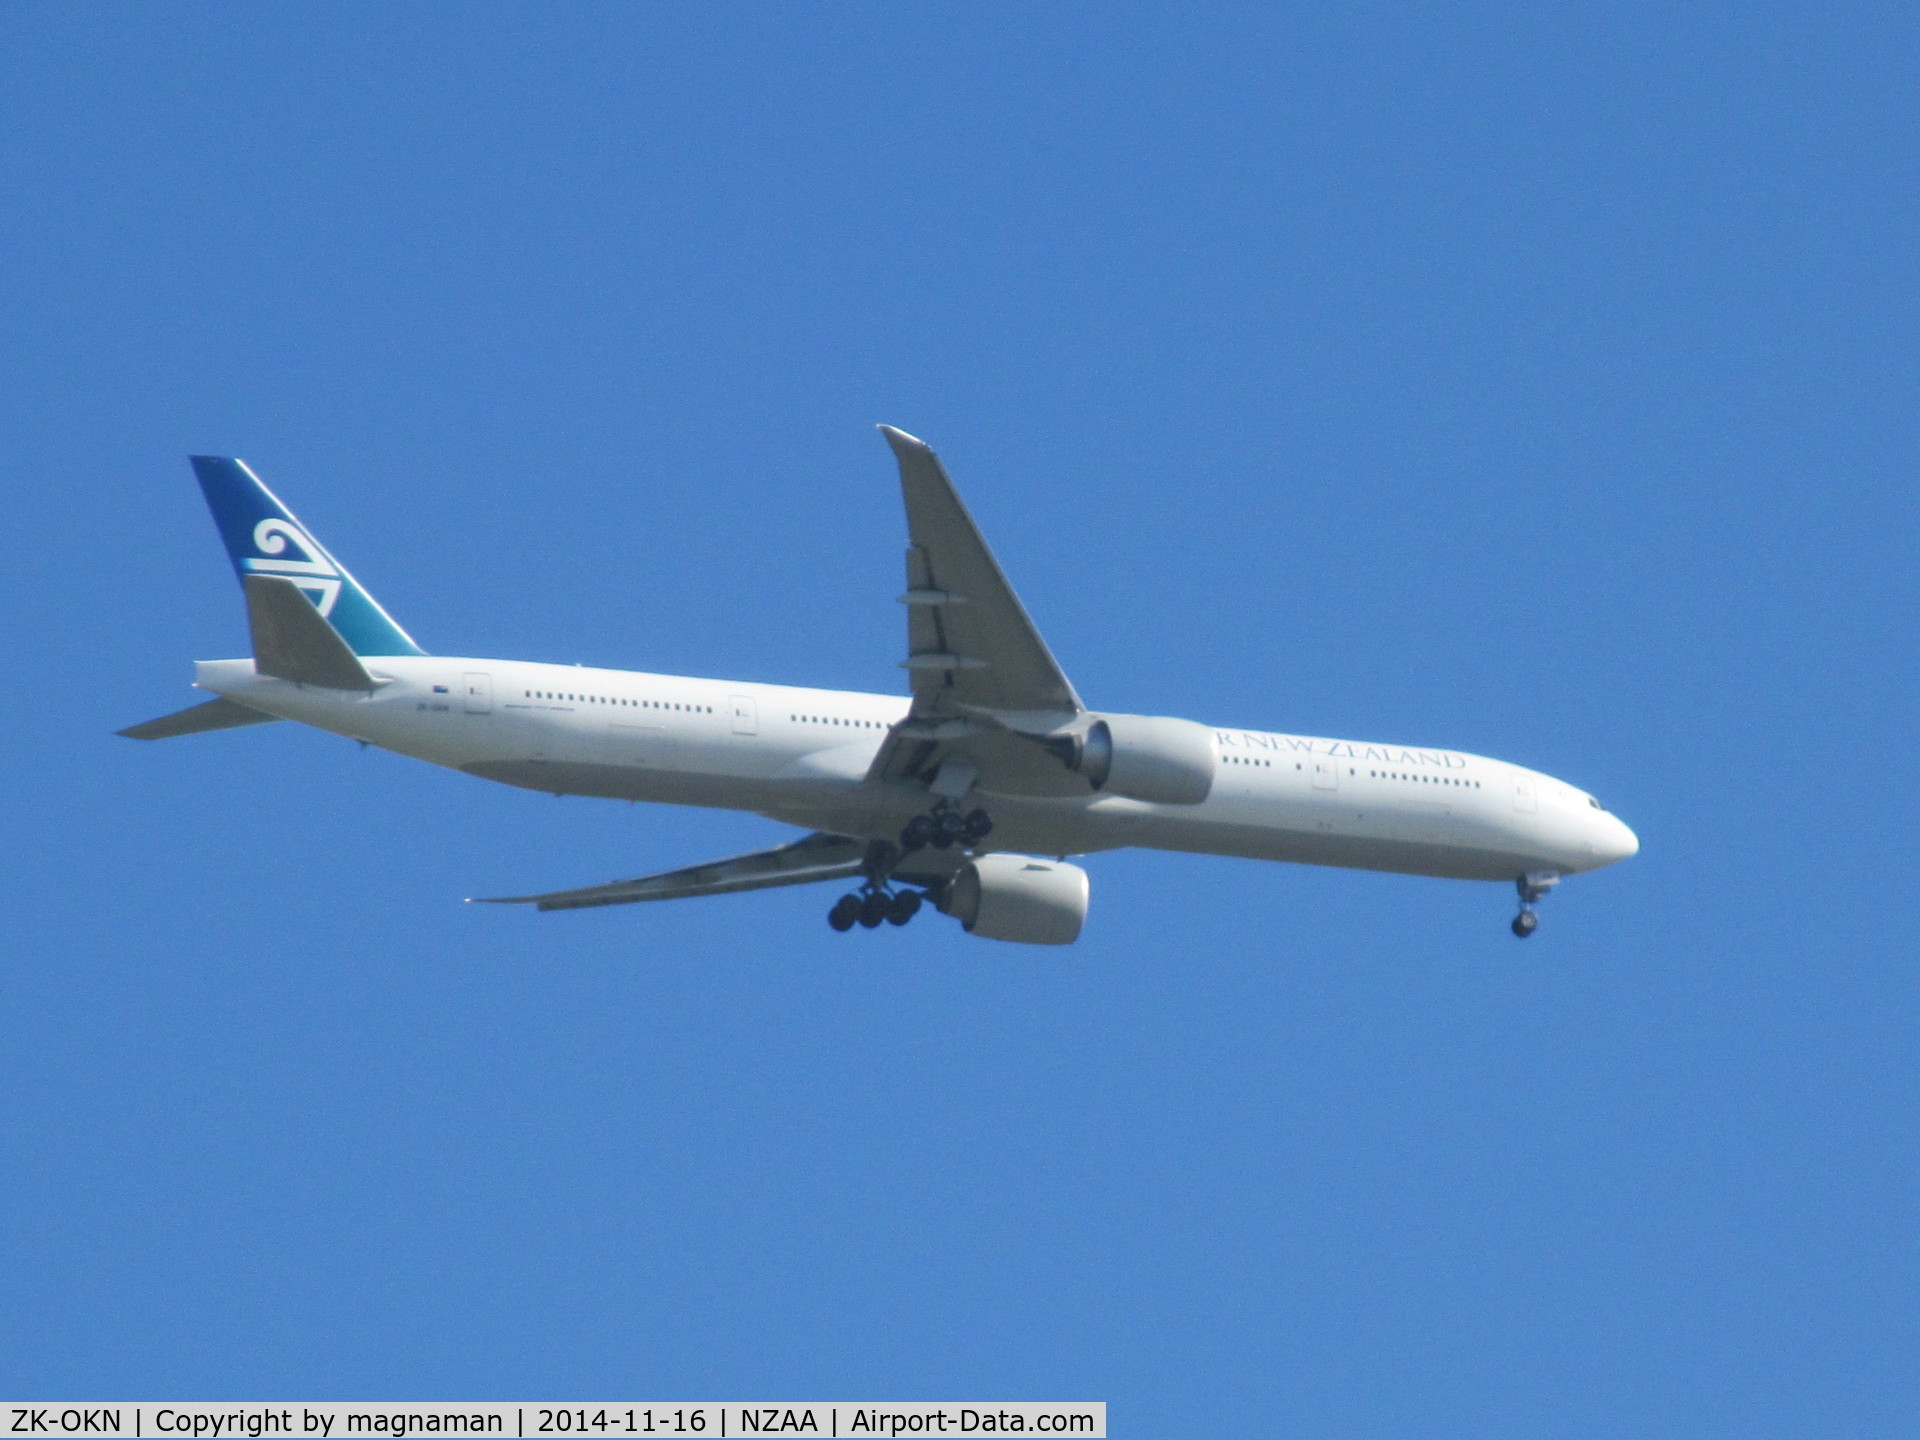 ZK-OKN, 2010 Boeing 777-306/ER C/N 38406, on finals to AKL